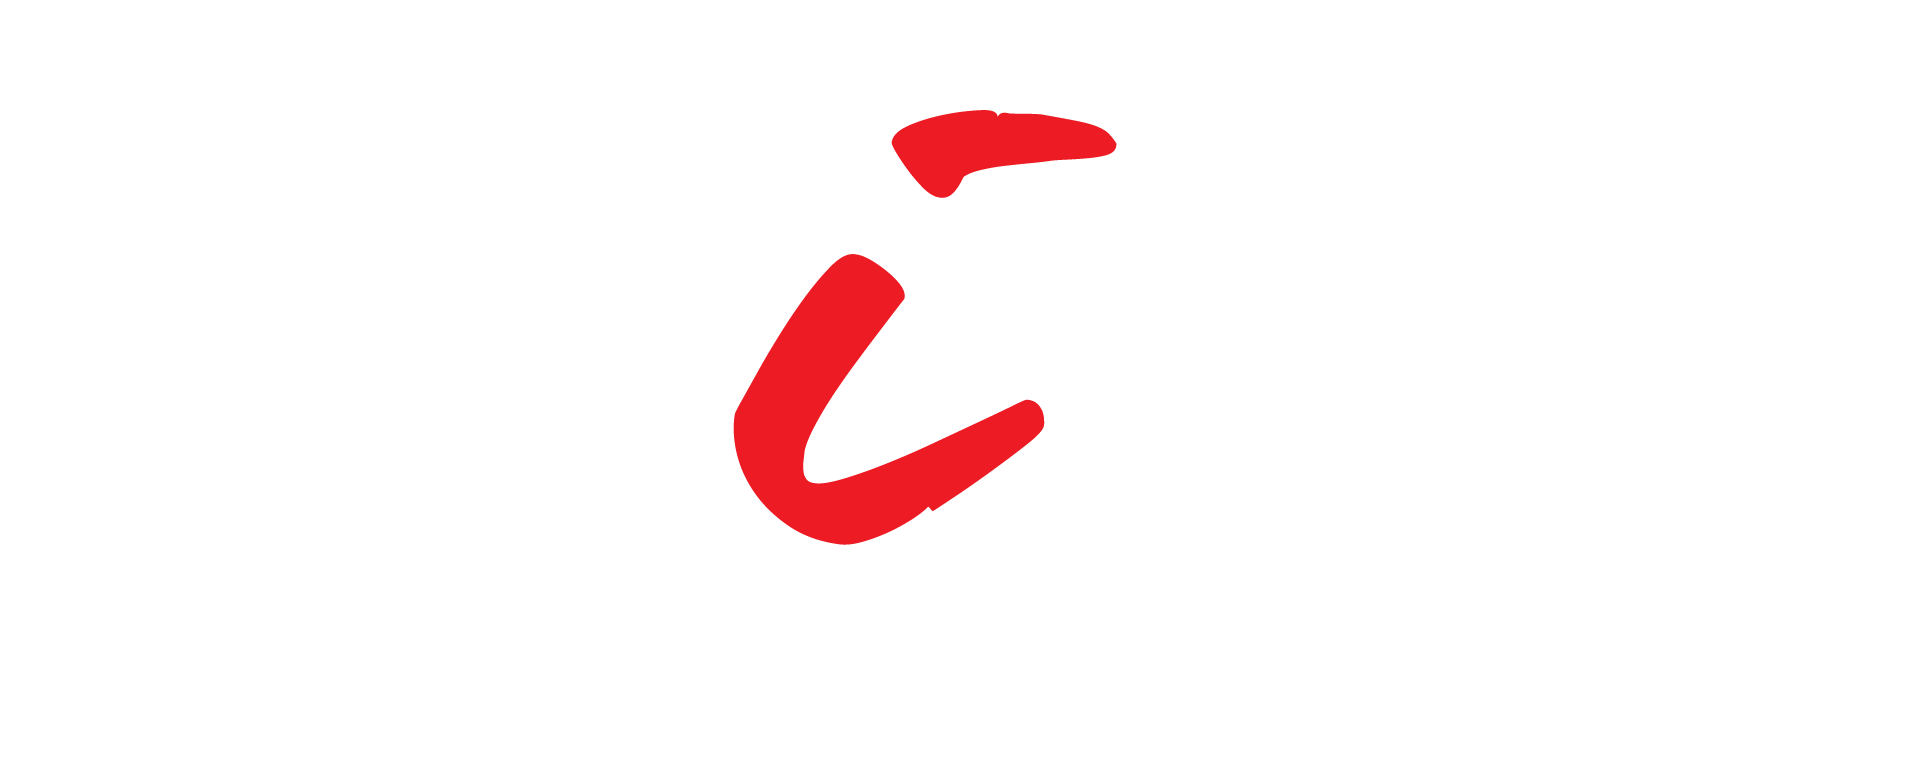 CKI com